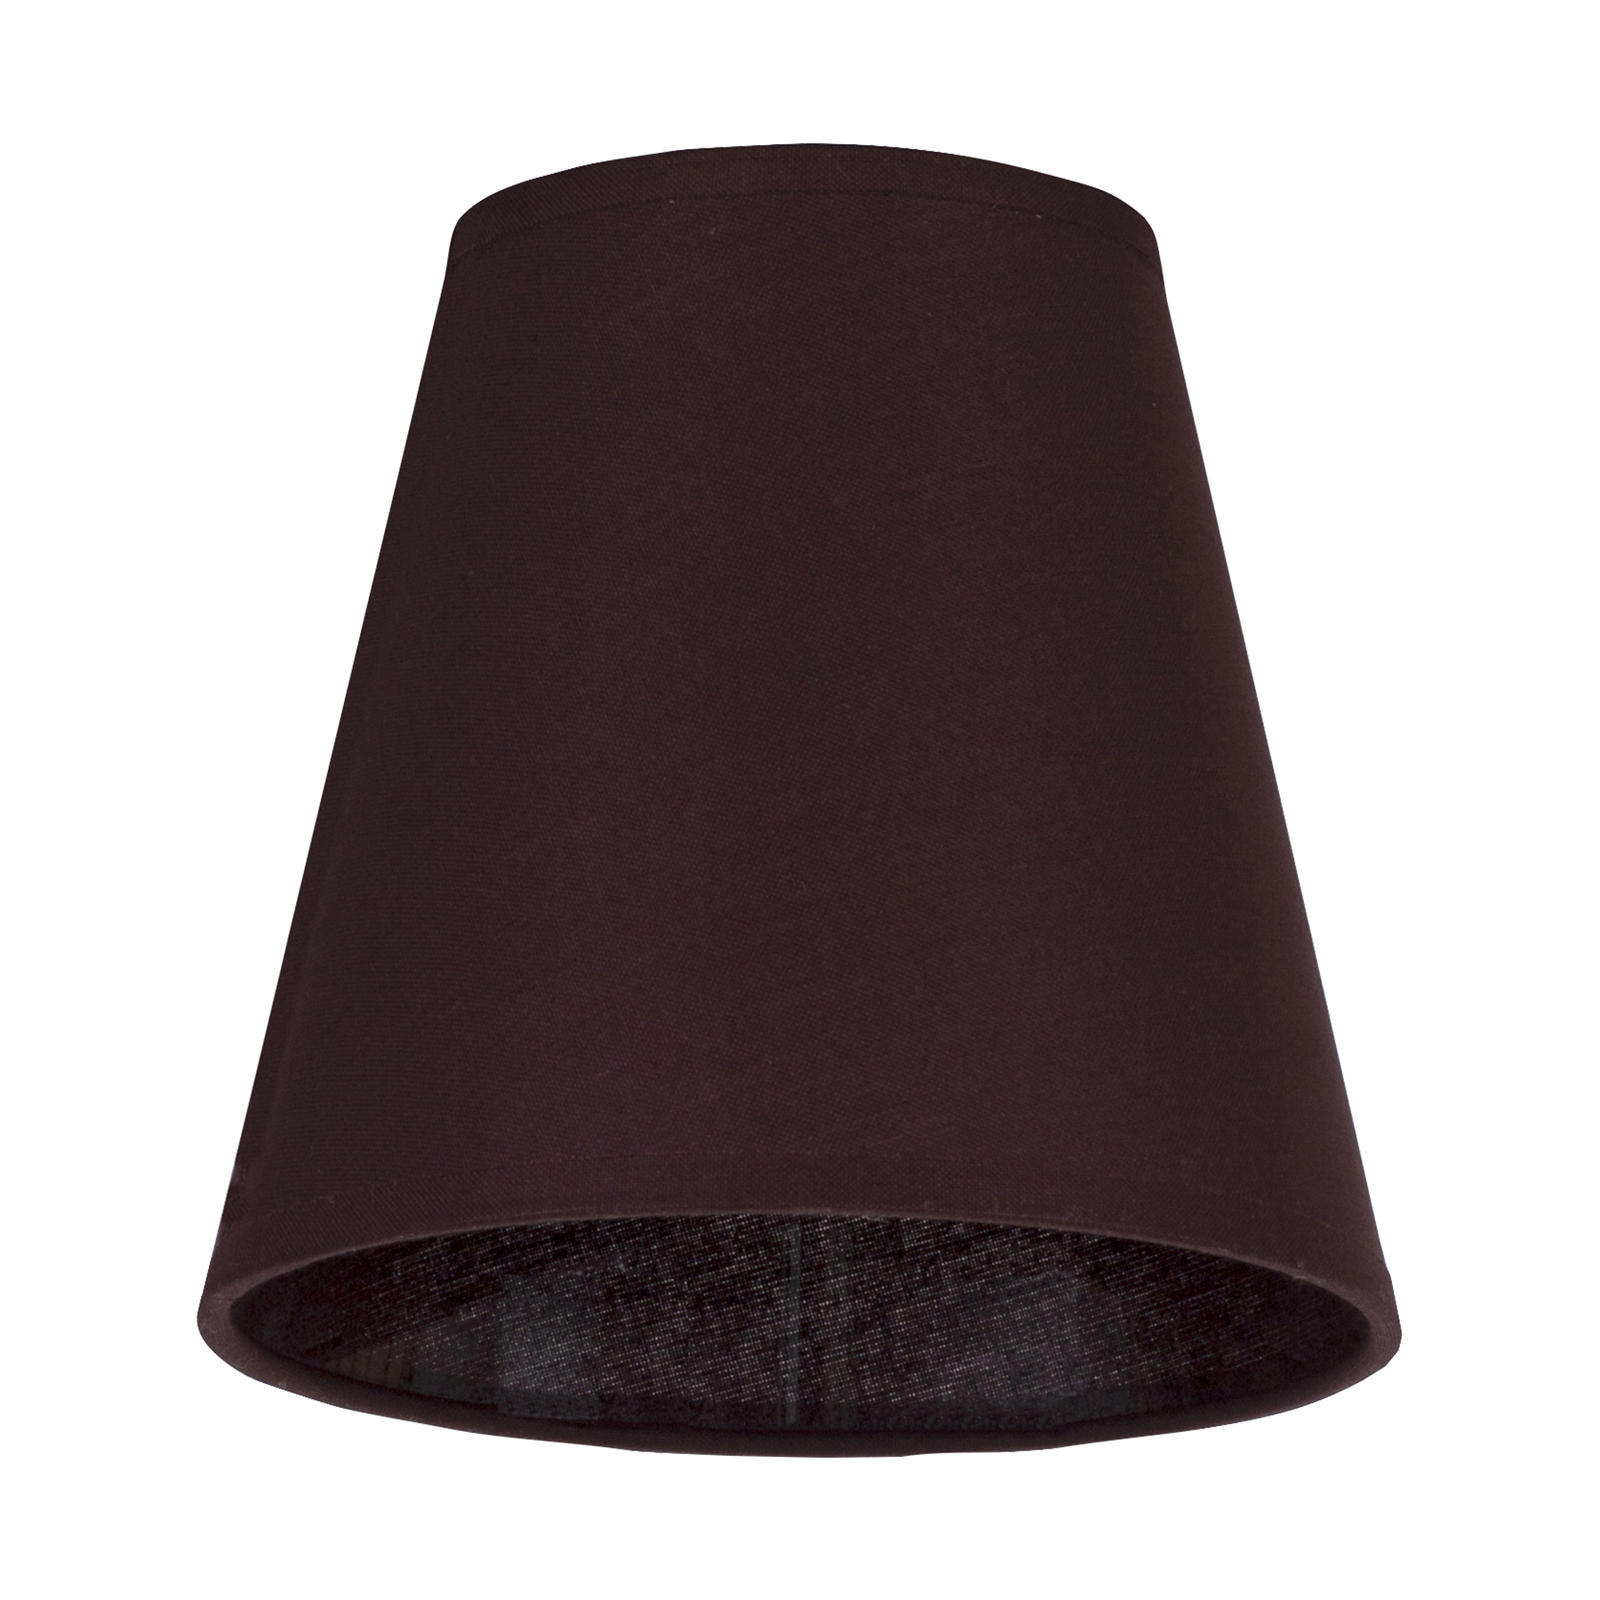 Lampskärm Cone AB, Ø 15 cm, mörkbrun